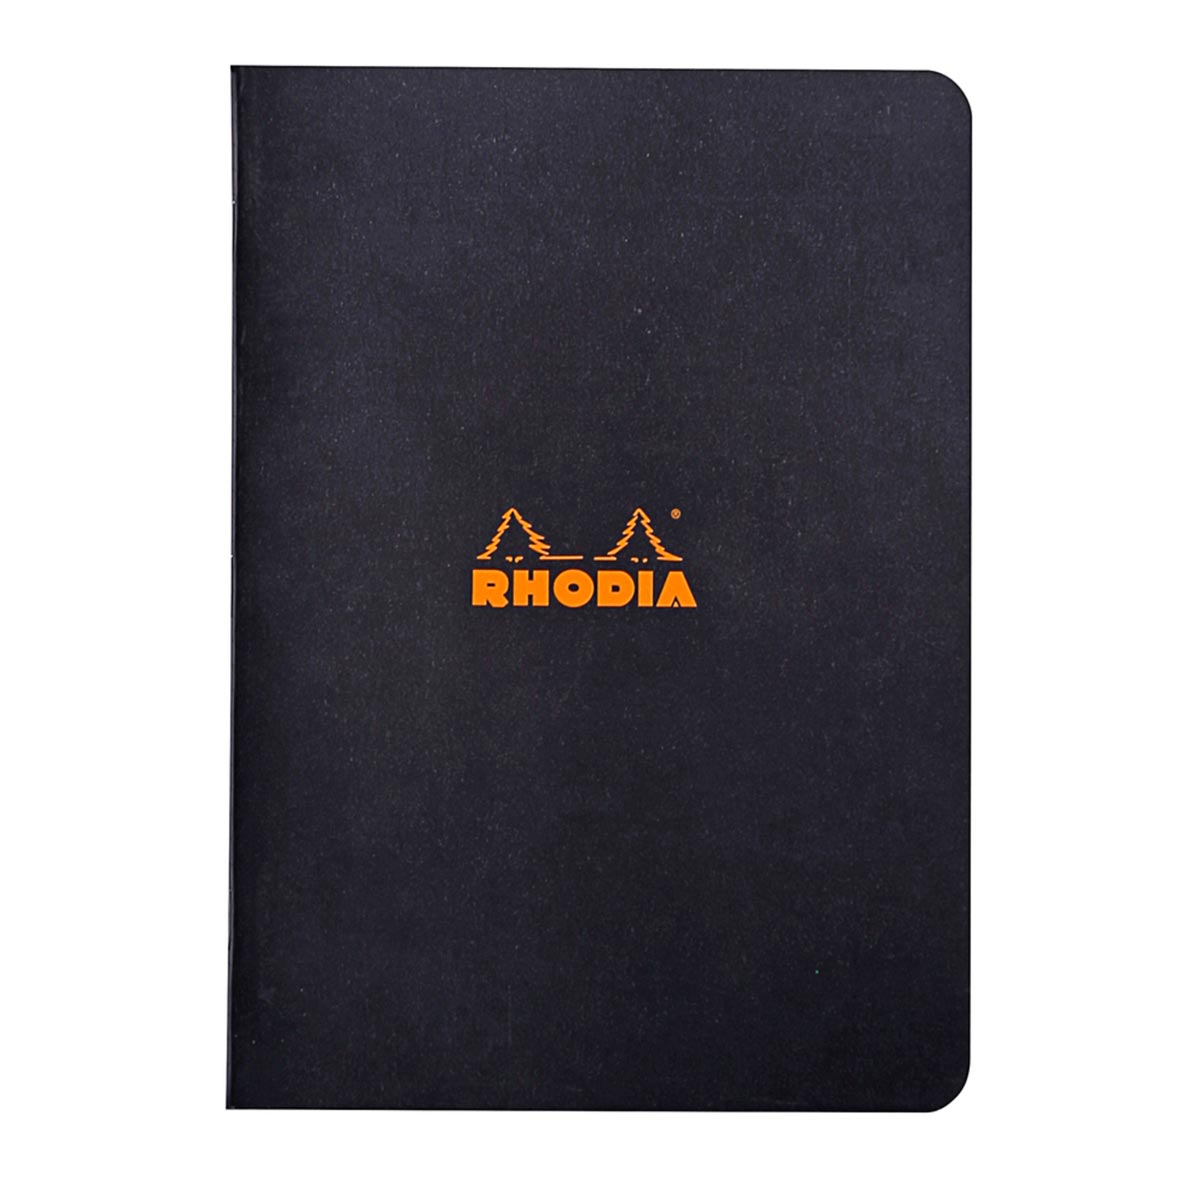 Rhodia - Notizheft A4 kariert, schwarz